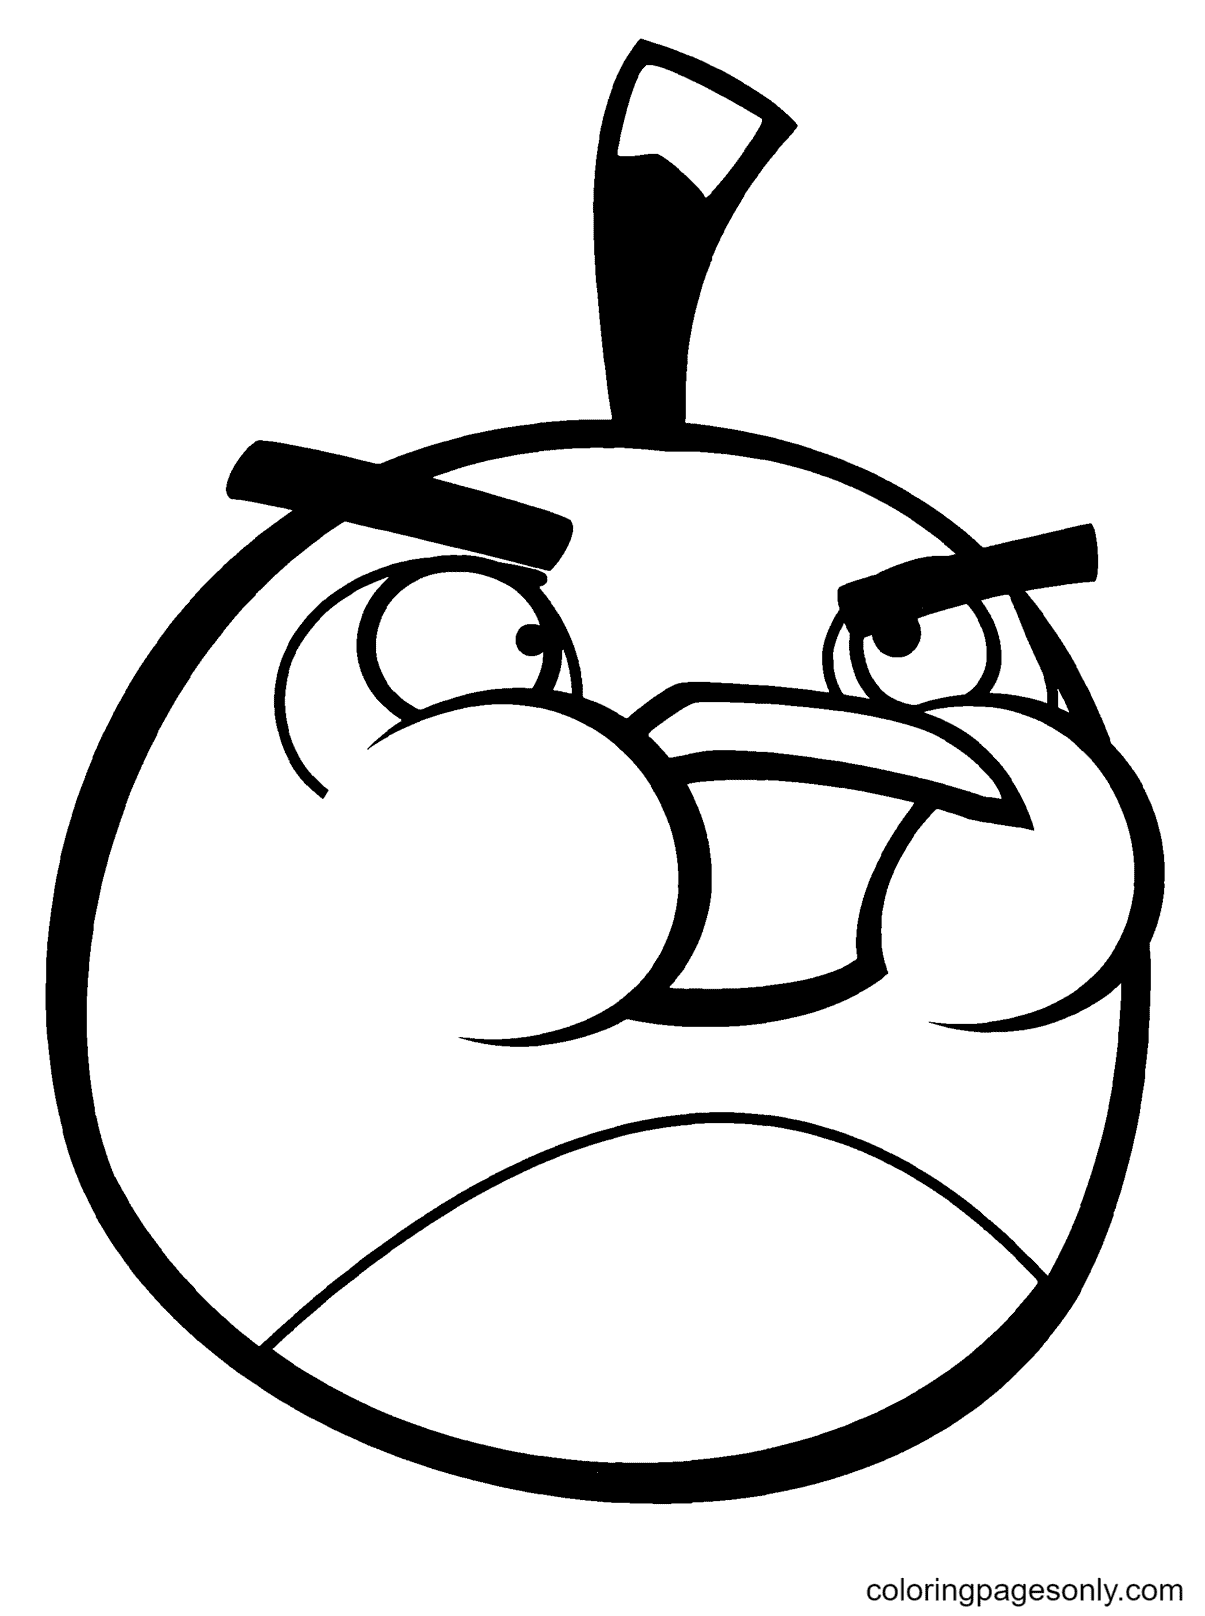 Bombe, l'oiseau noir d'Angry Birds